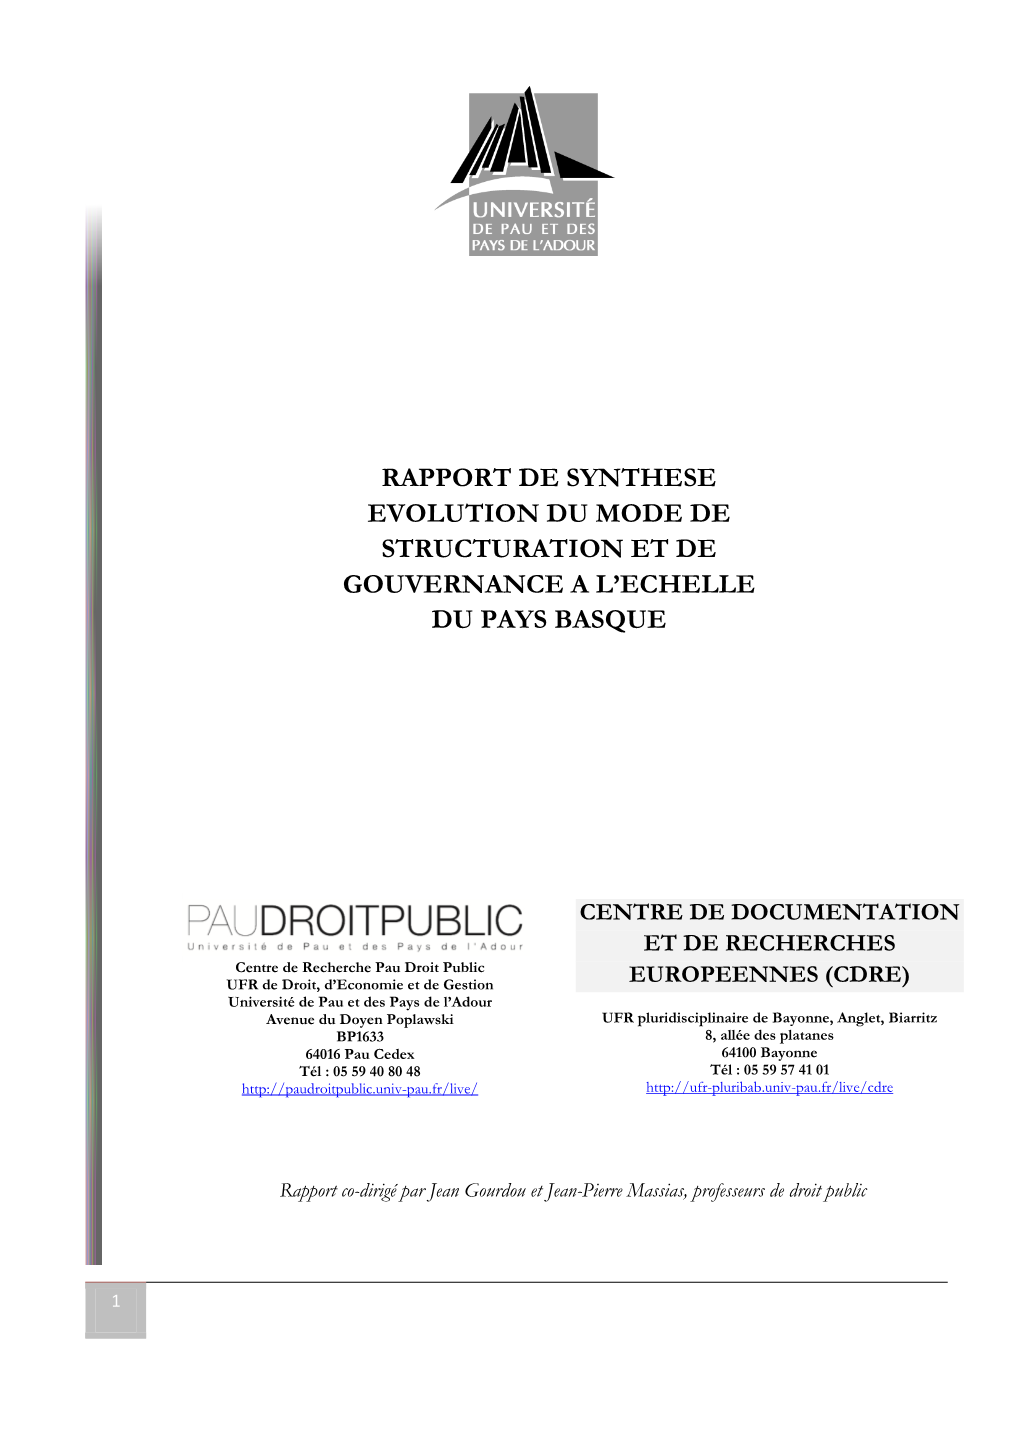 Rapport De Synthese Evolution Du Mode De Structuration Et De Gouvernance a L’Echelle Du Pays Basque